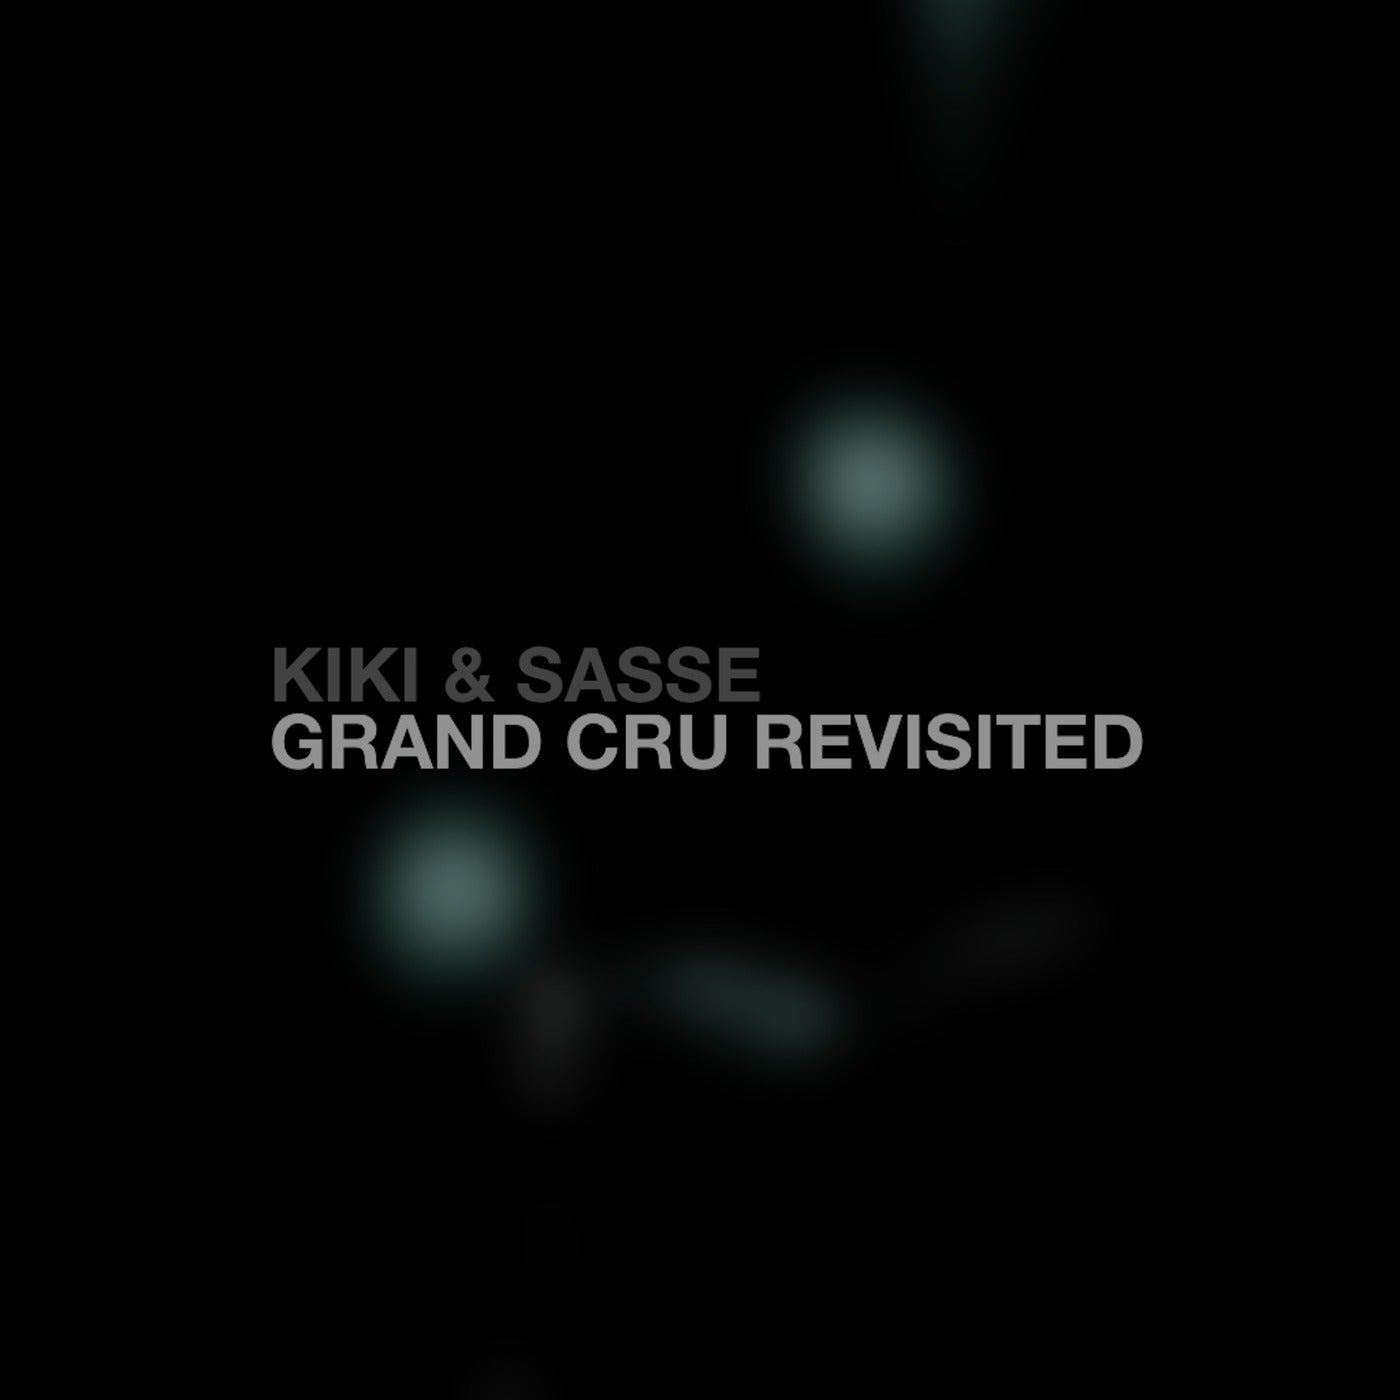 Grand Cru Revisited